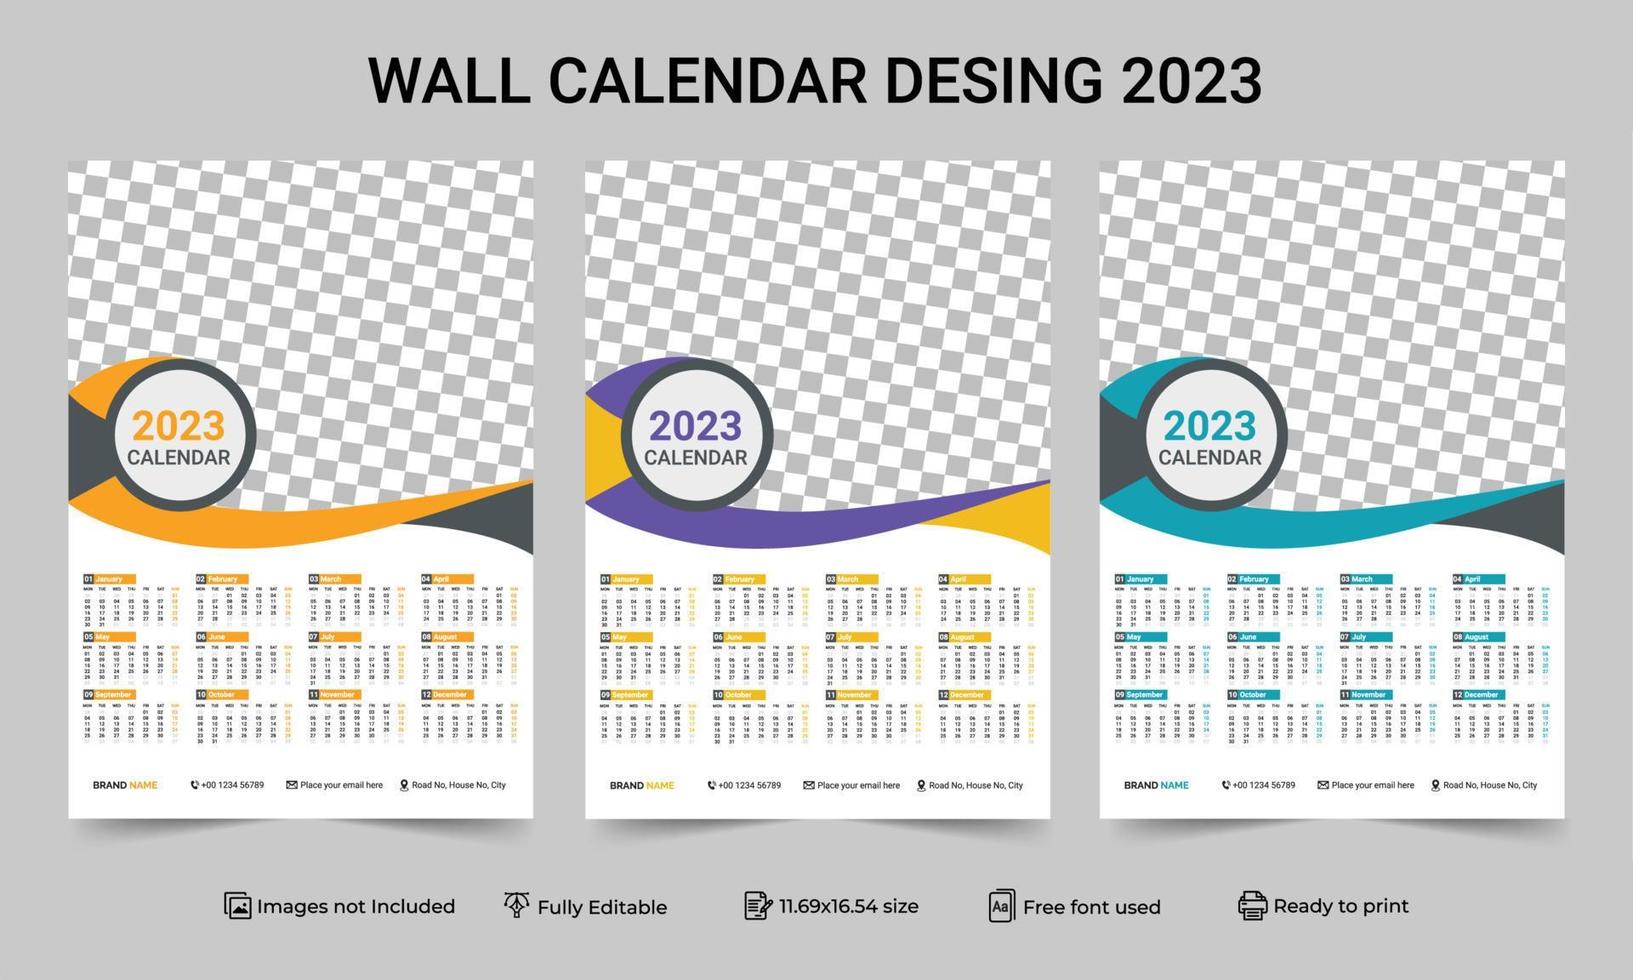 1 Seite Wandkalender 2023 Vorlage mit 3 Farbvariationen. Drucken Sie eine Seite Wandkalender-Vorlagendesign für 2023. 2023-Kalenderjahr-Vektorillustration. einseitiger Wandkalender 2023 vektor